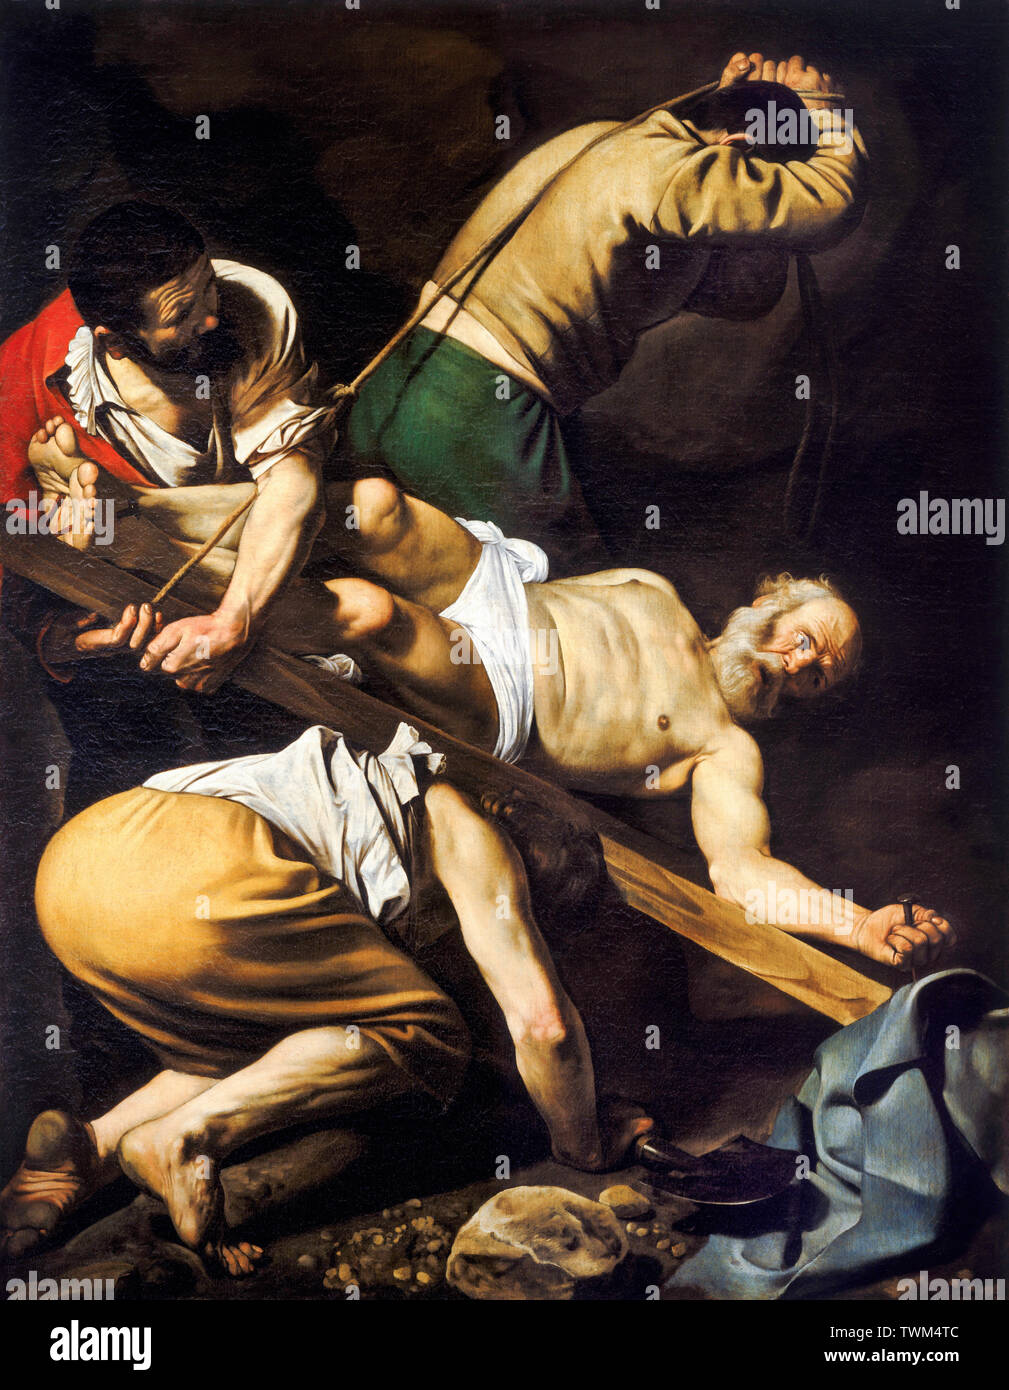 Caravaggio, Crocifissione di San Pietro, pittura barocca, circa 1600 Foto Stock